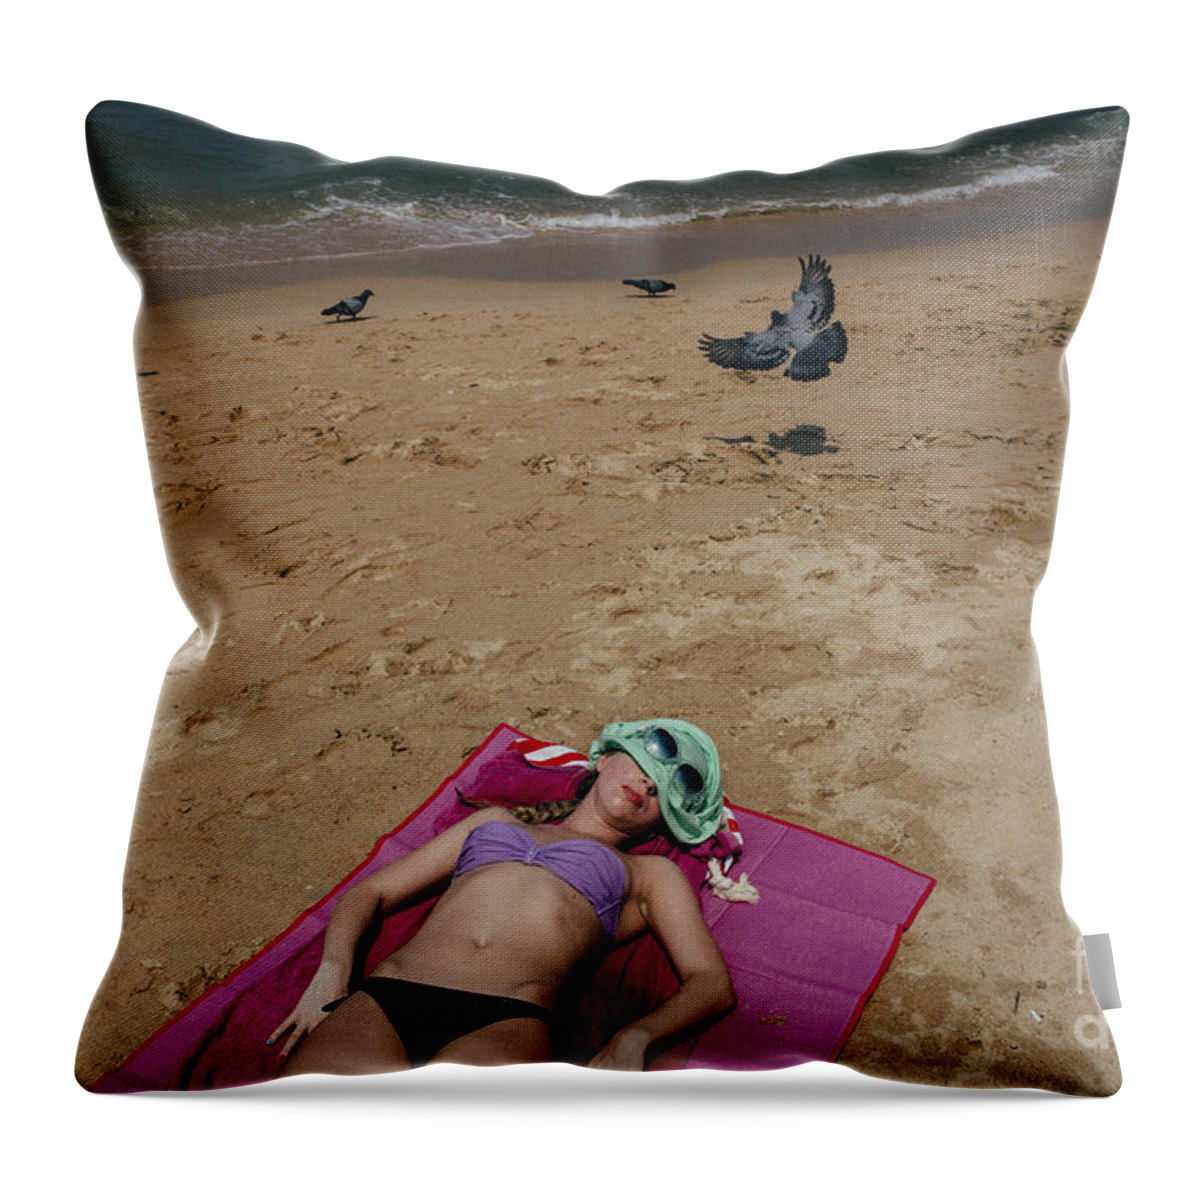 Beach Throw Pillow featuring the photograph Pattaya Beach by Setsiri Silapasuwanchai